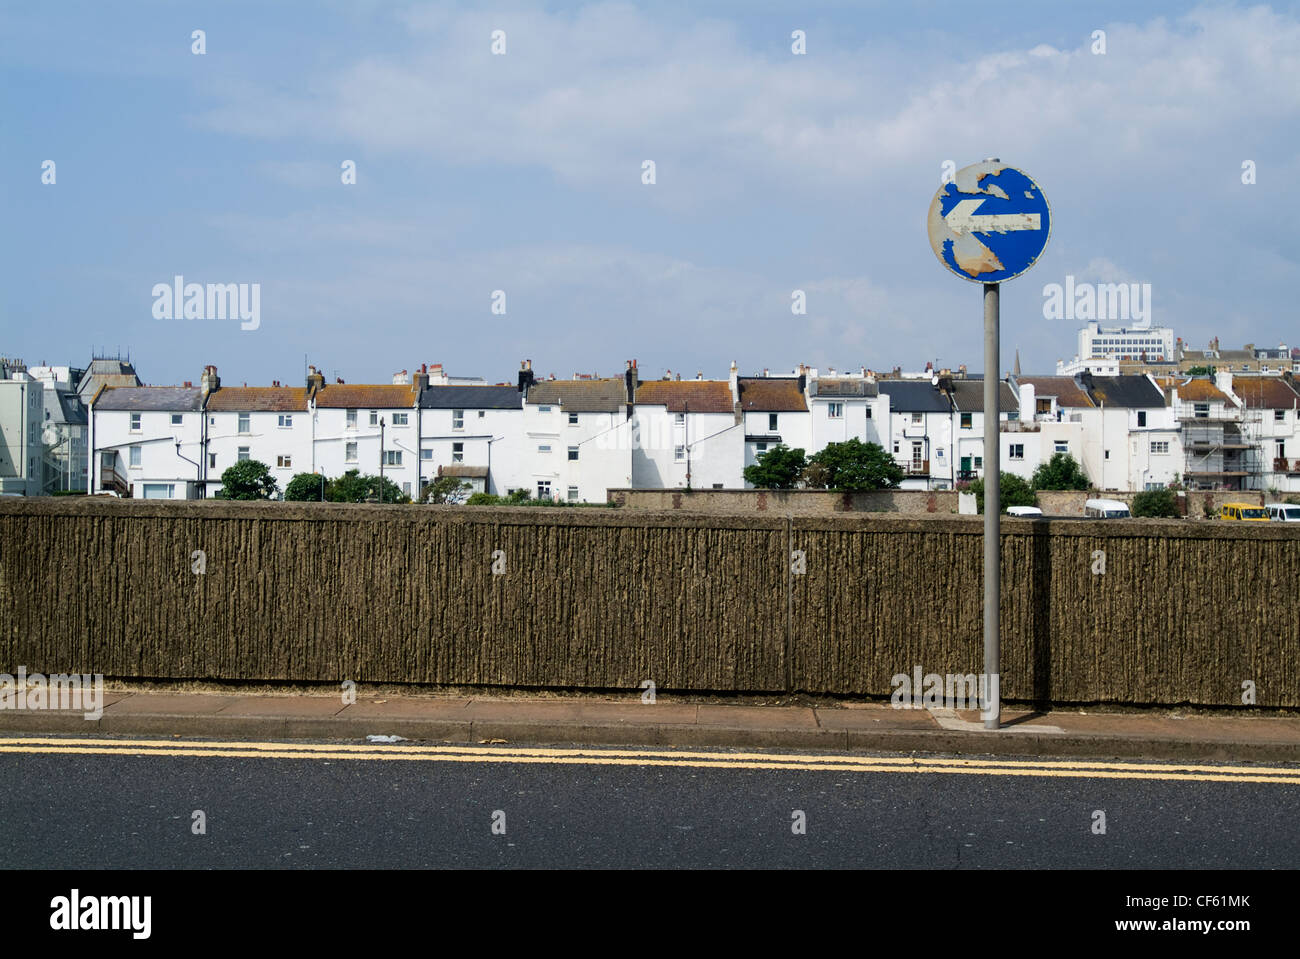 Eine Straße Szene zeigt Reihenhaus wohnen und ein One Way-Verkehrsschild In Brighton. Stockfoto